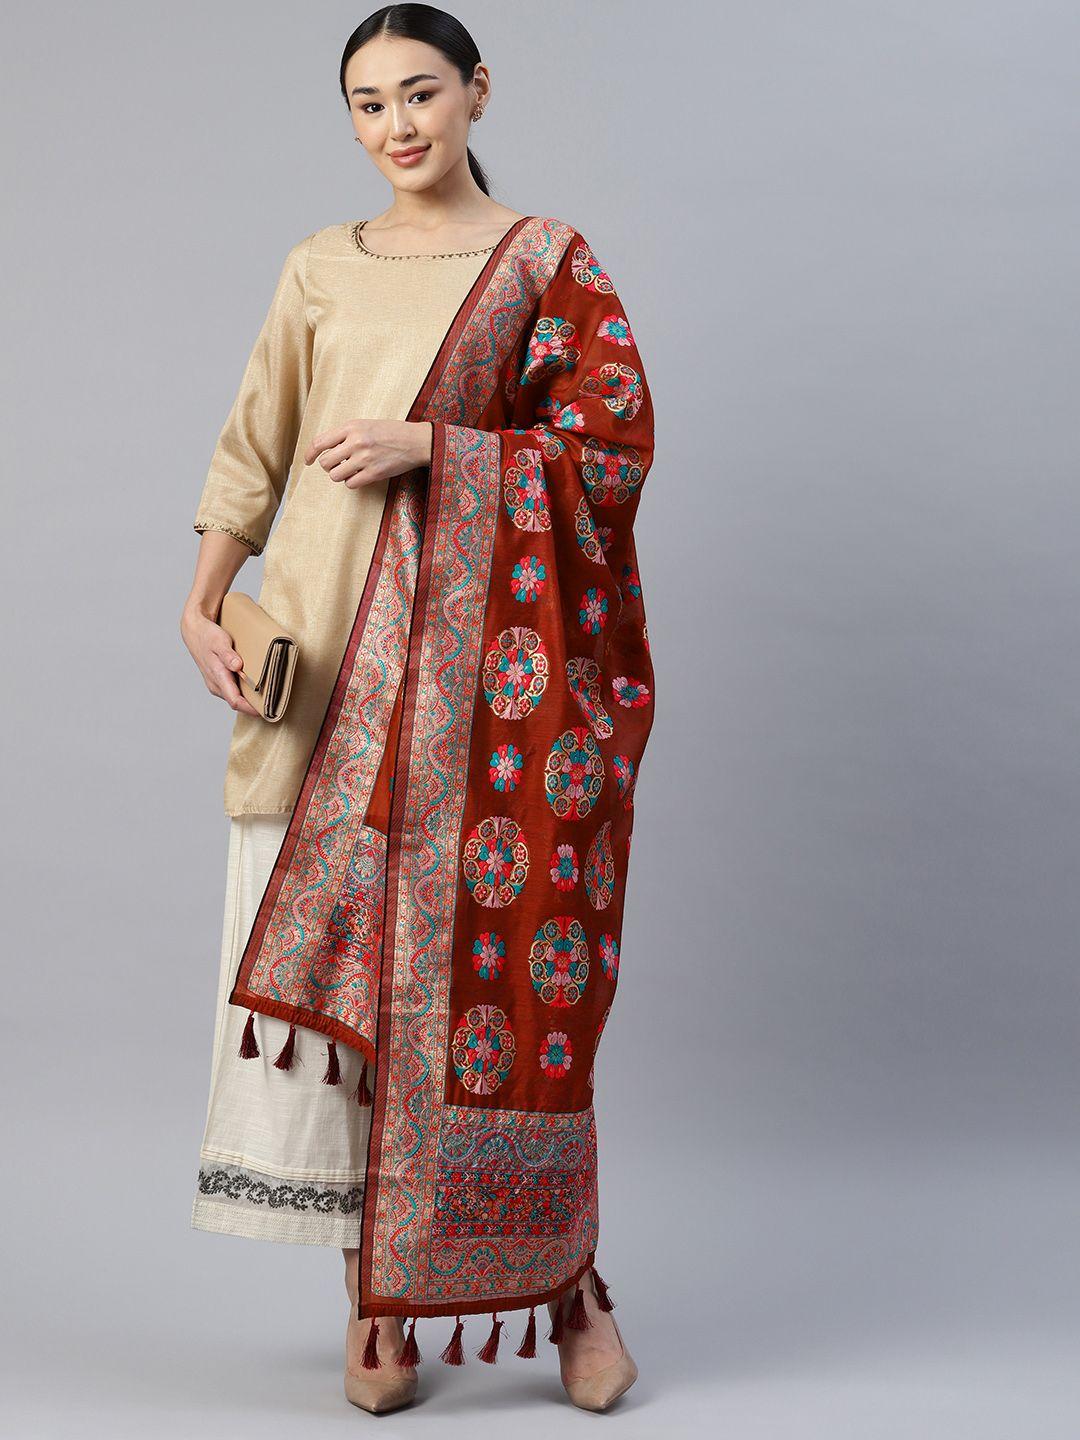 silk land ethnic motifs embroidered pure cotton dupatta with thread work